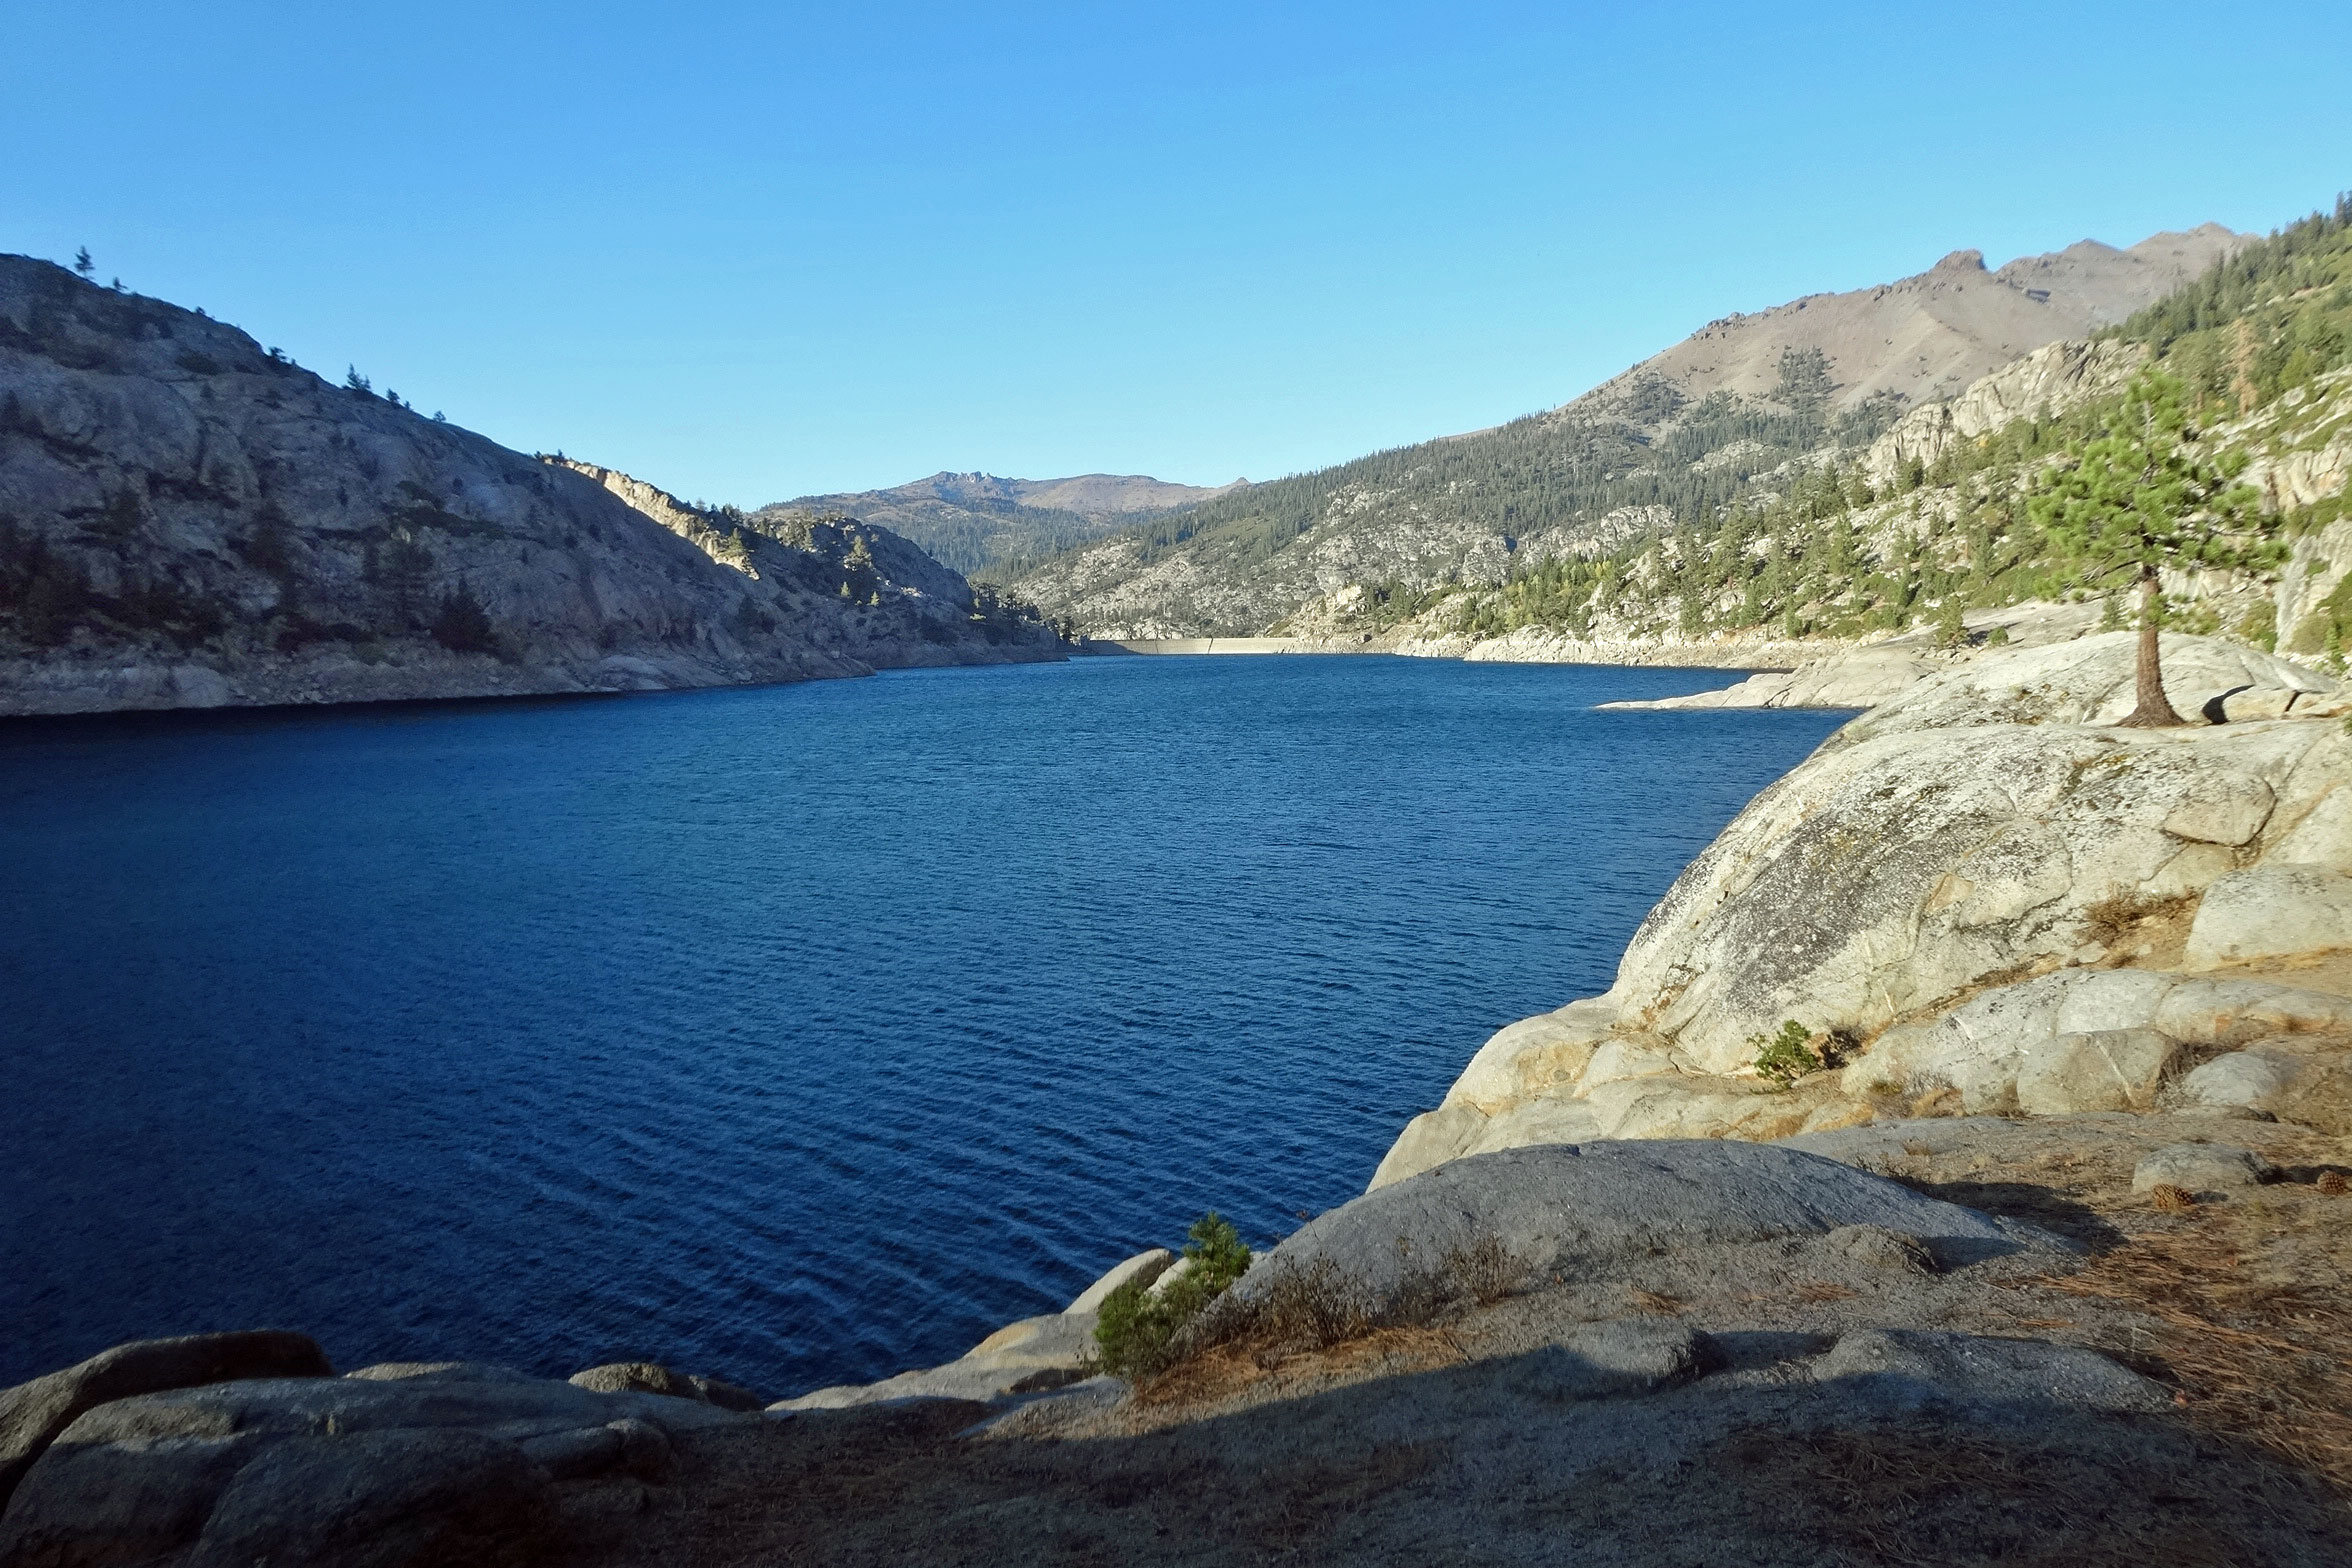 Relief Reservoir, Emigrant Wilderness, California